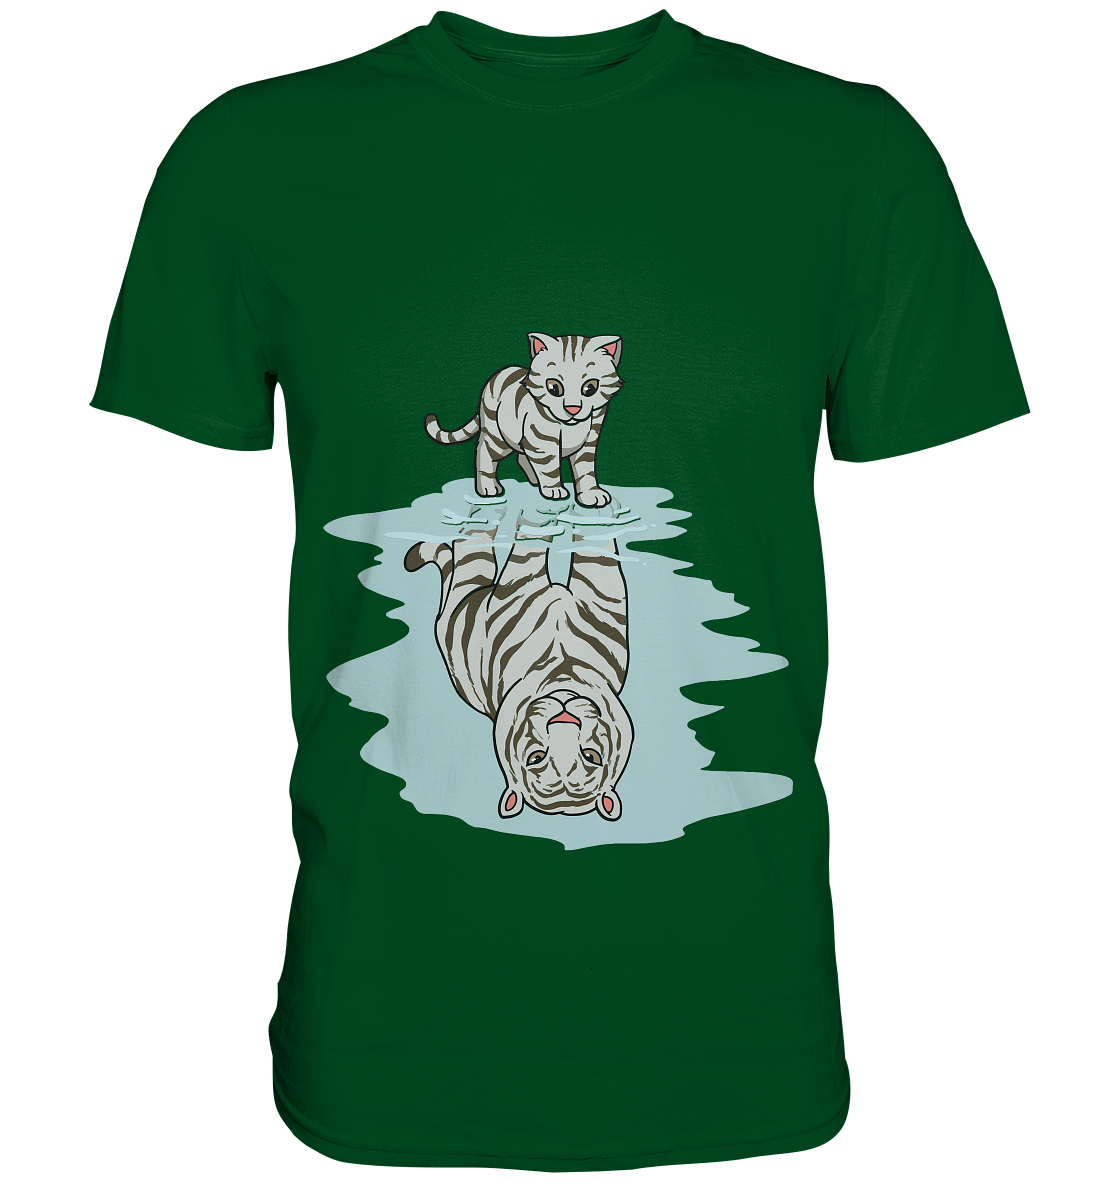 Katze und Tiger - das wahre ich im Spiegelbild einer Pfütze - Premium Shirt